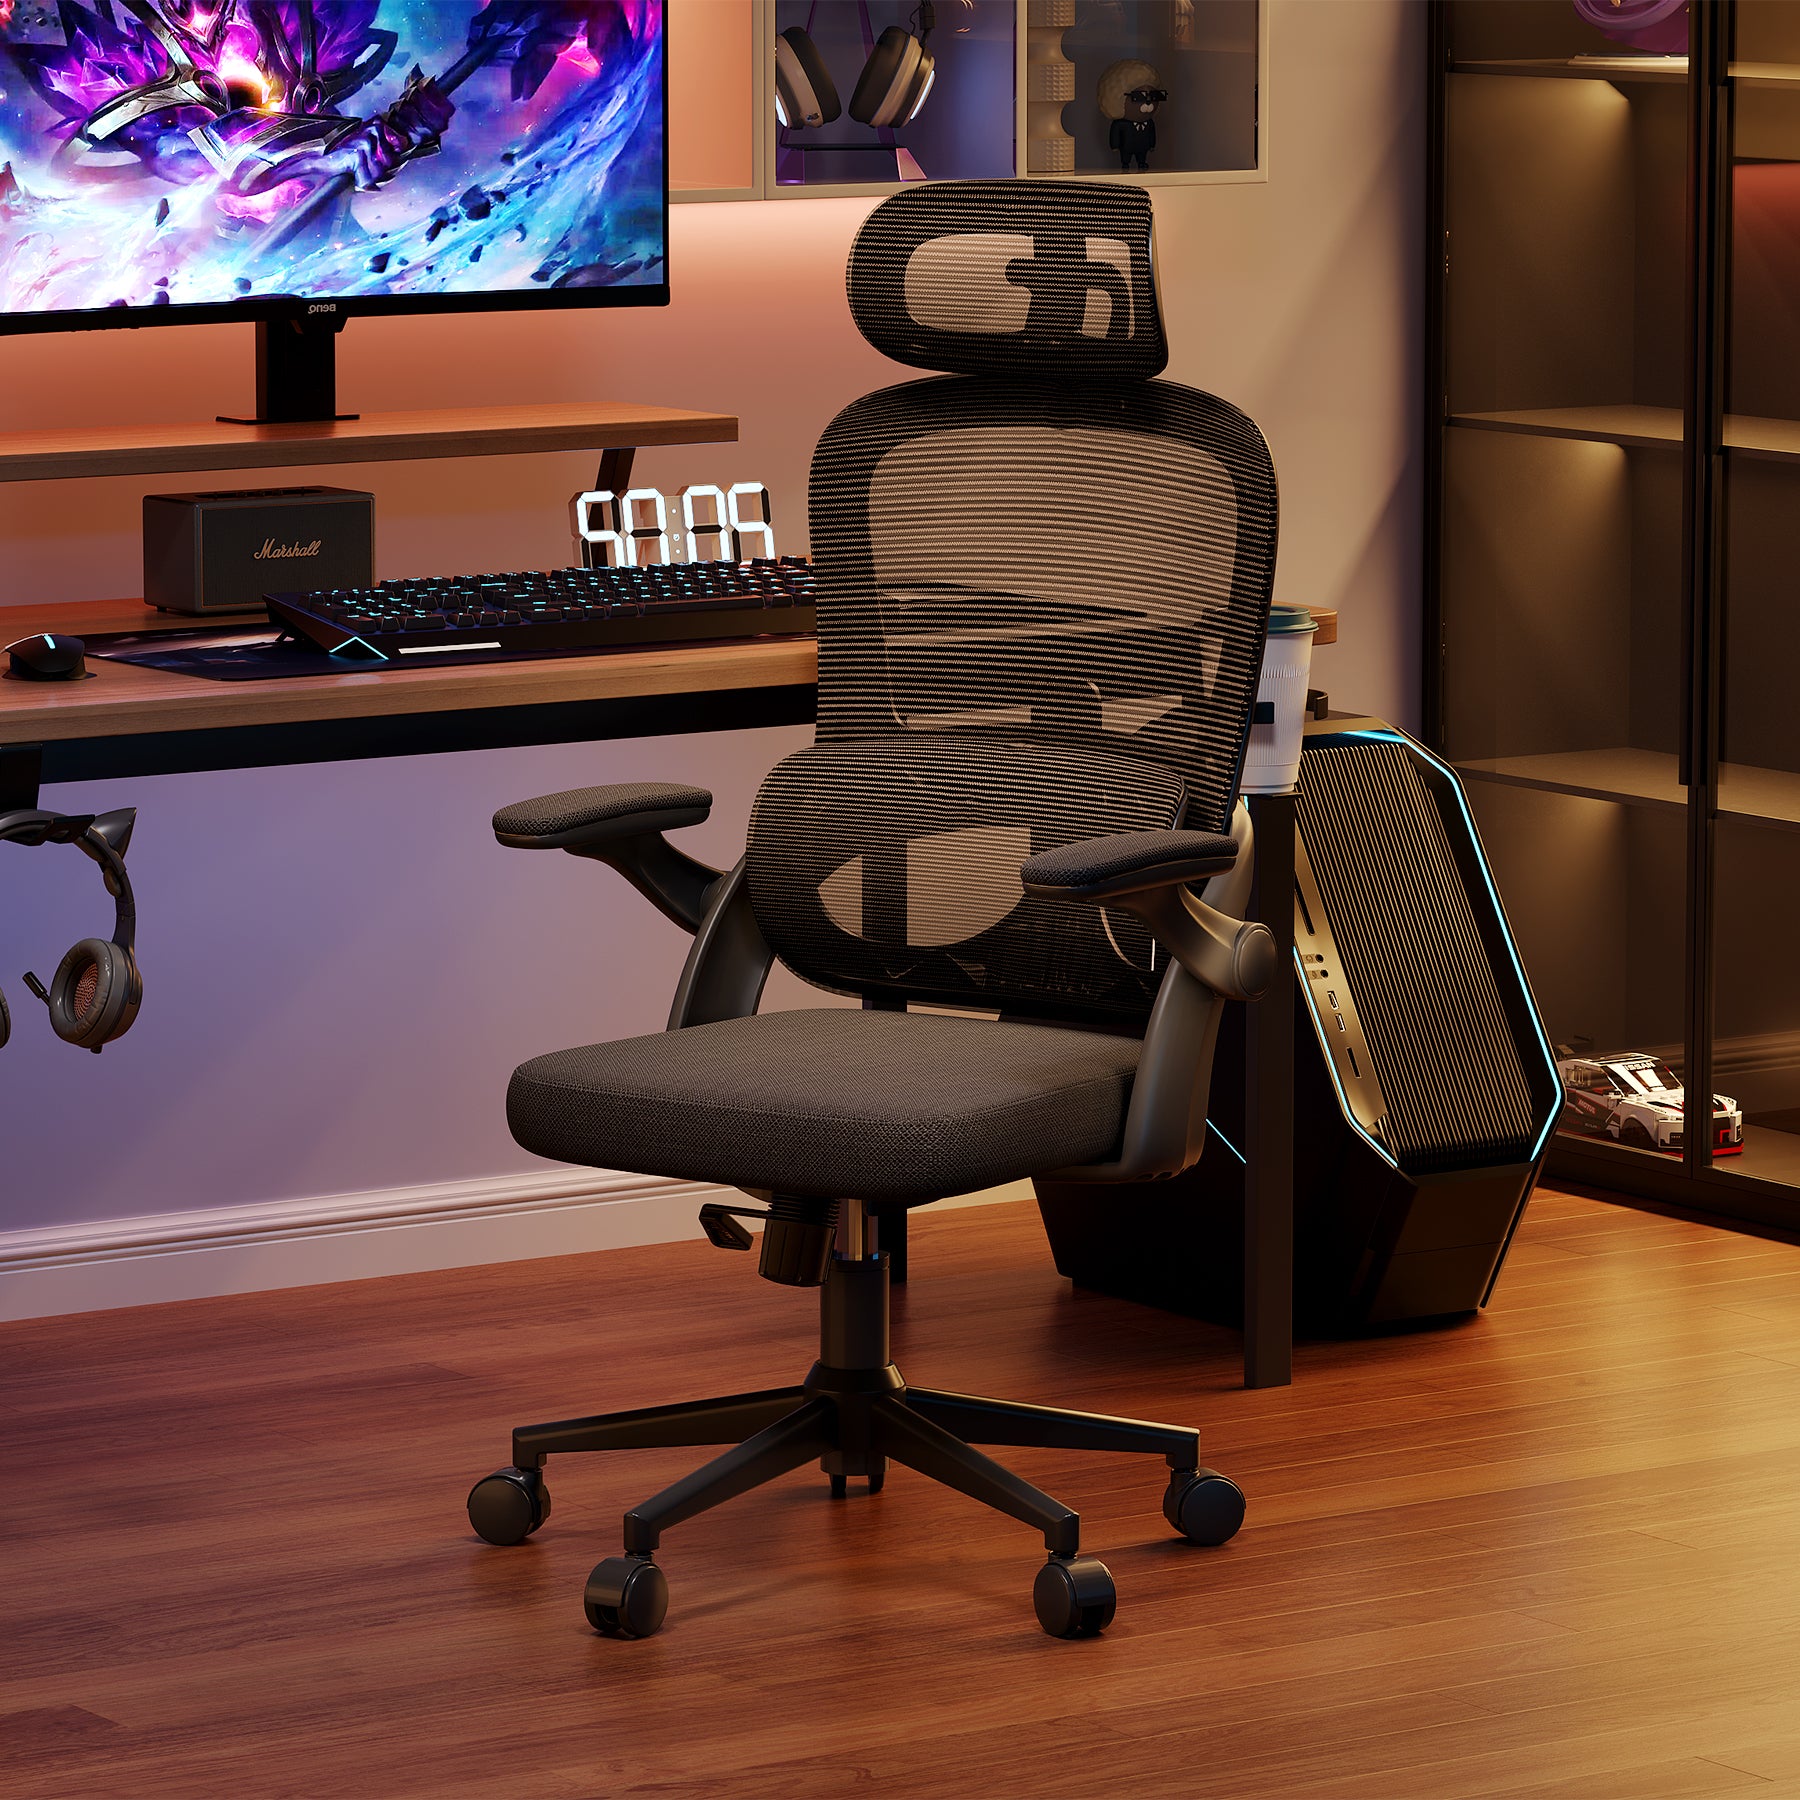 <tc>Sihoo M102C chaise de bureau ergonomique avec Support lombaire de niveau supérieur</tc>